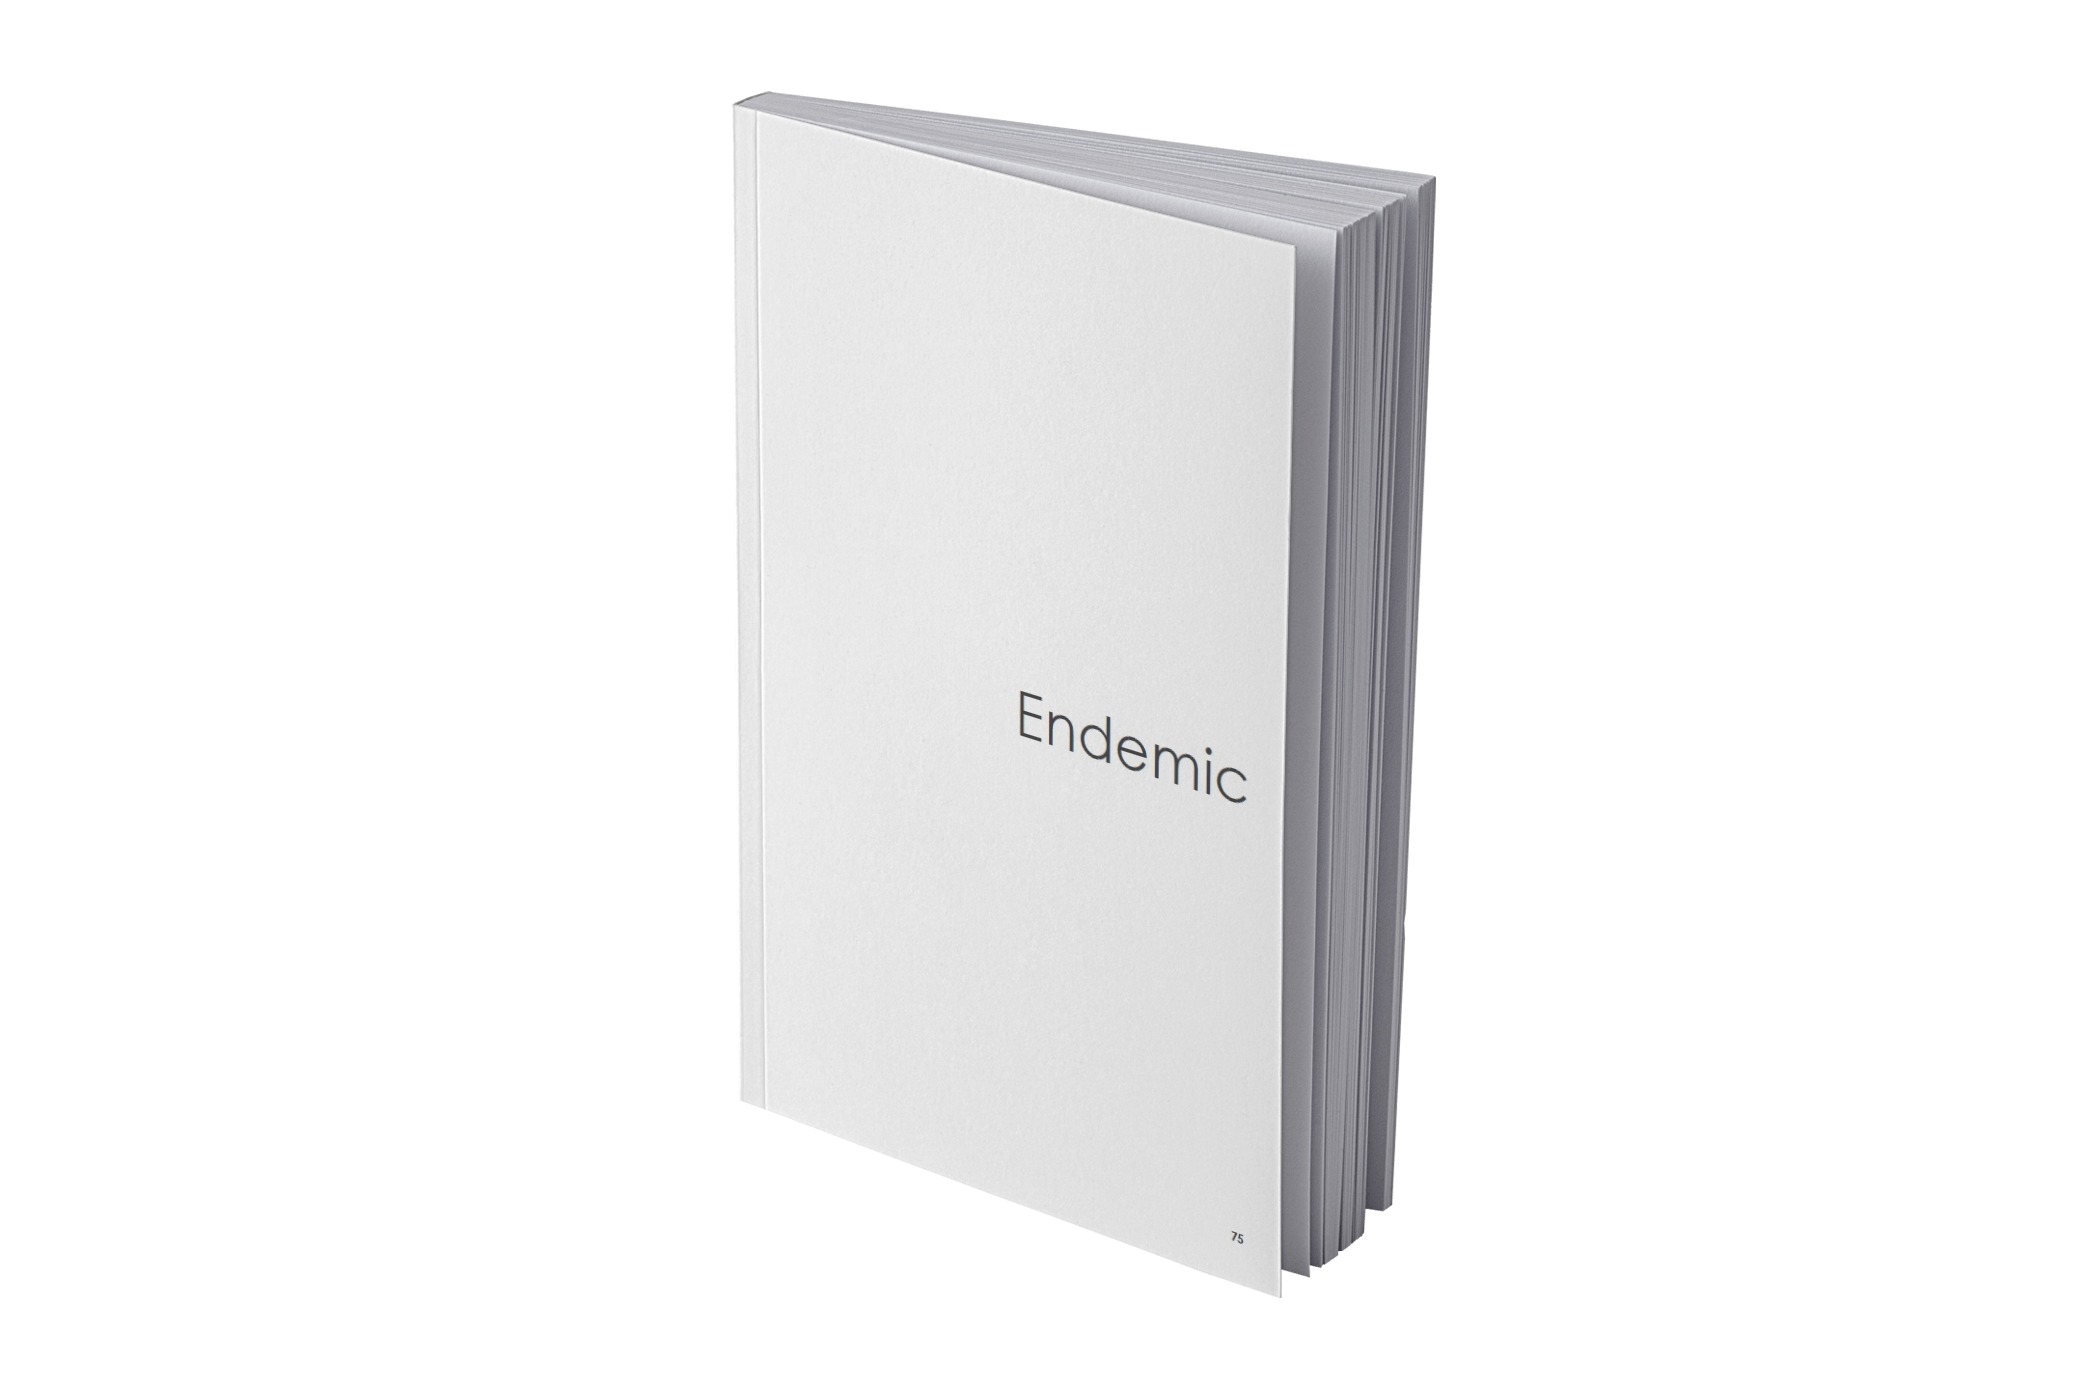 Ikona cennika - książka z napisem Endemic będącym nazwą kolekcji.